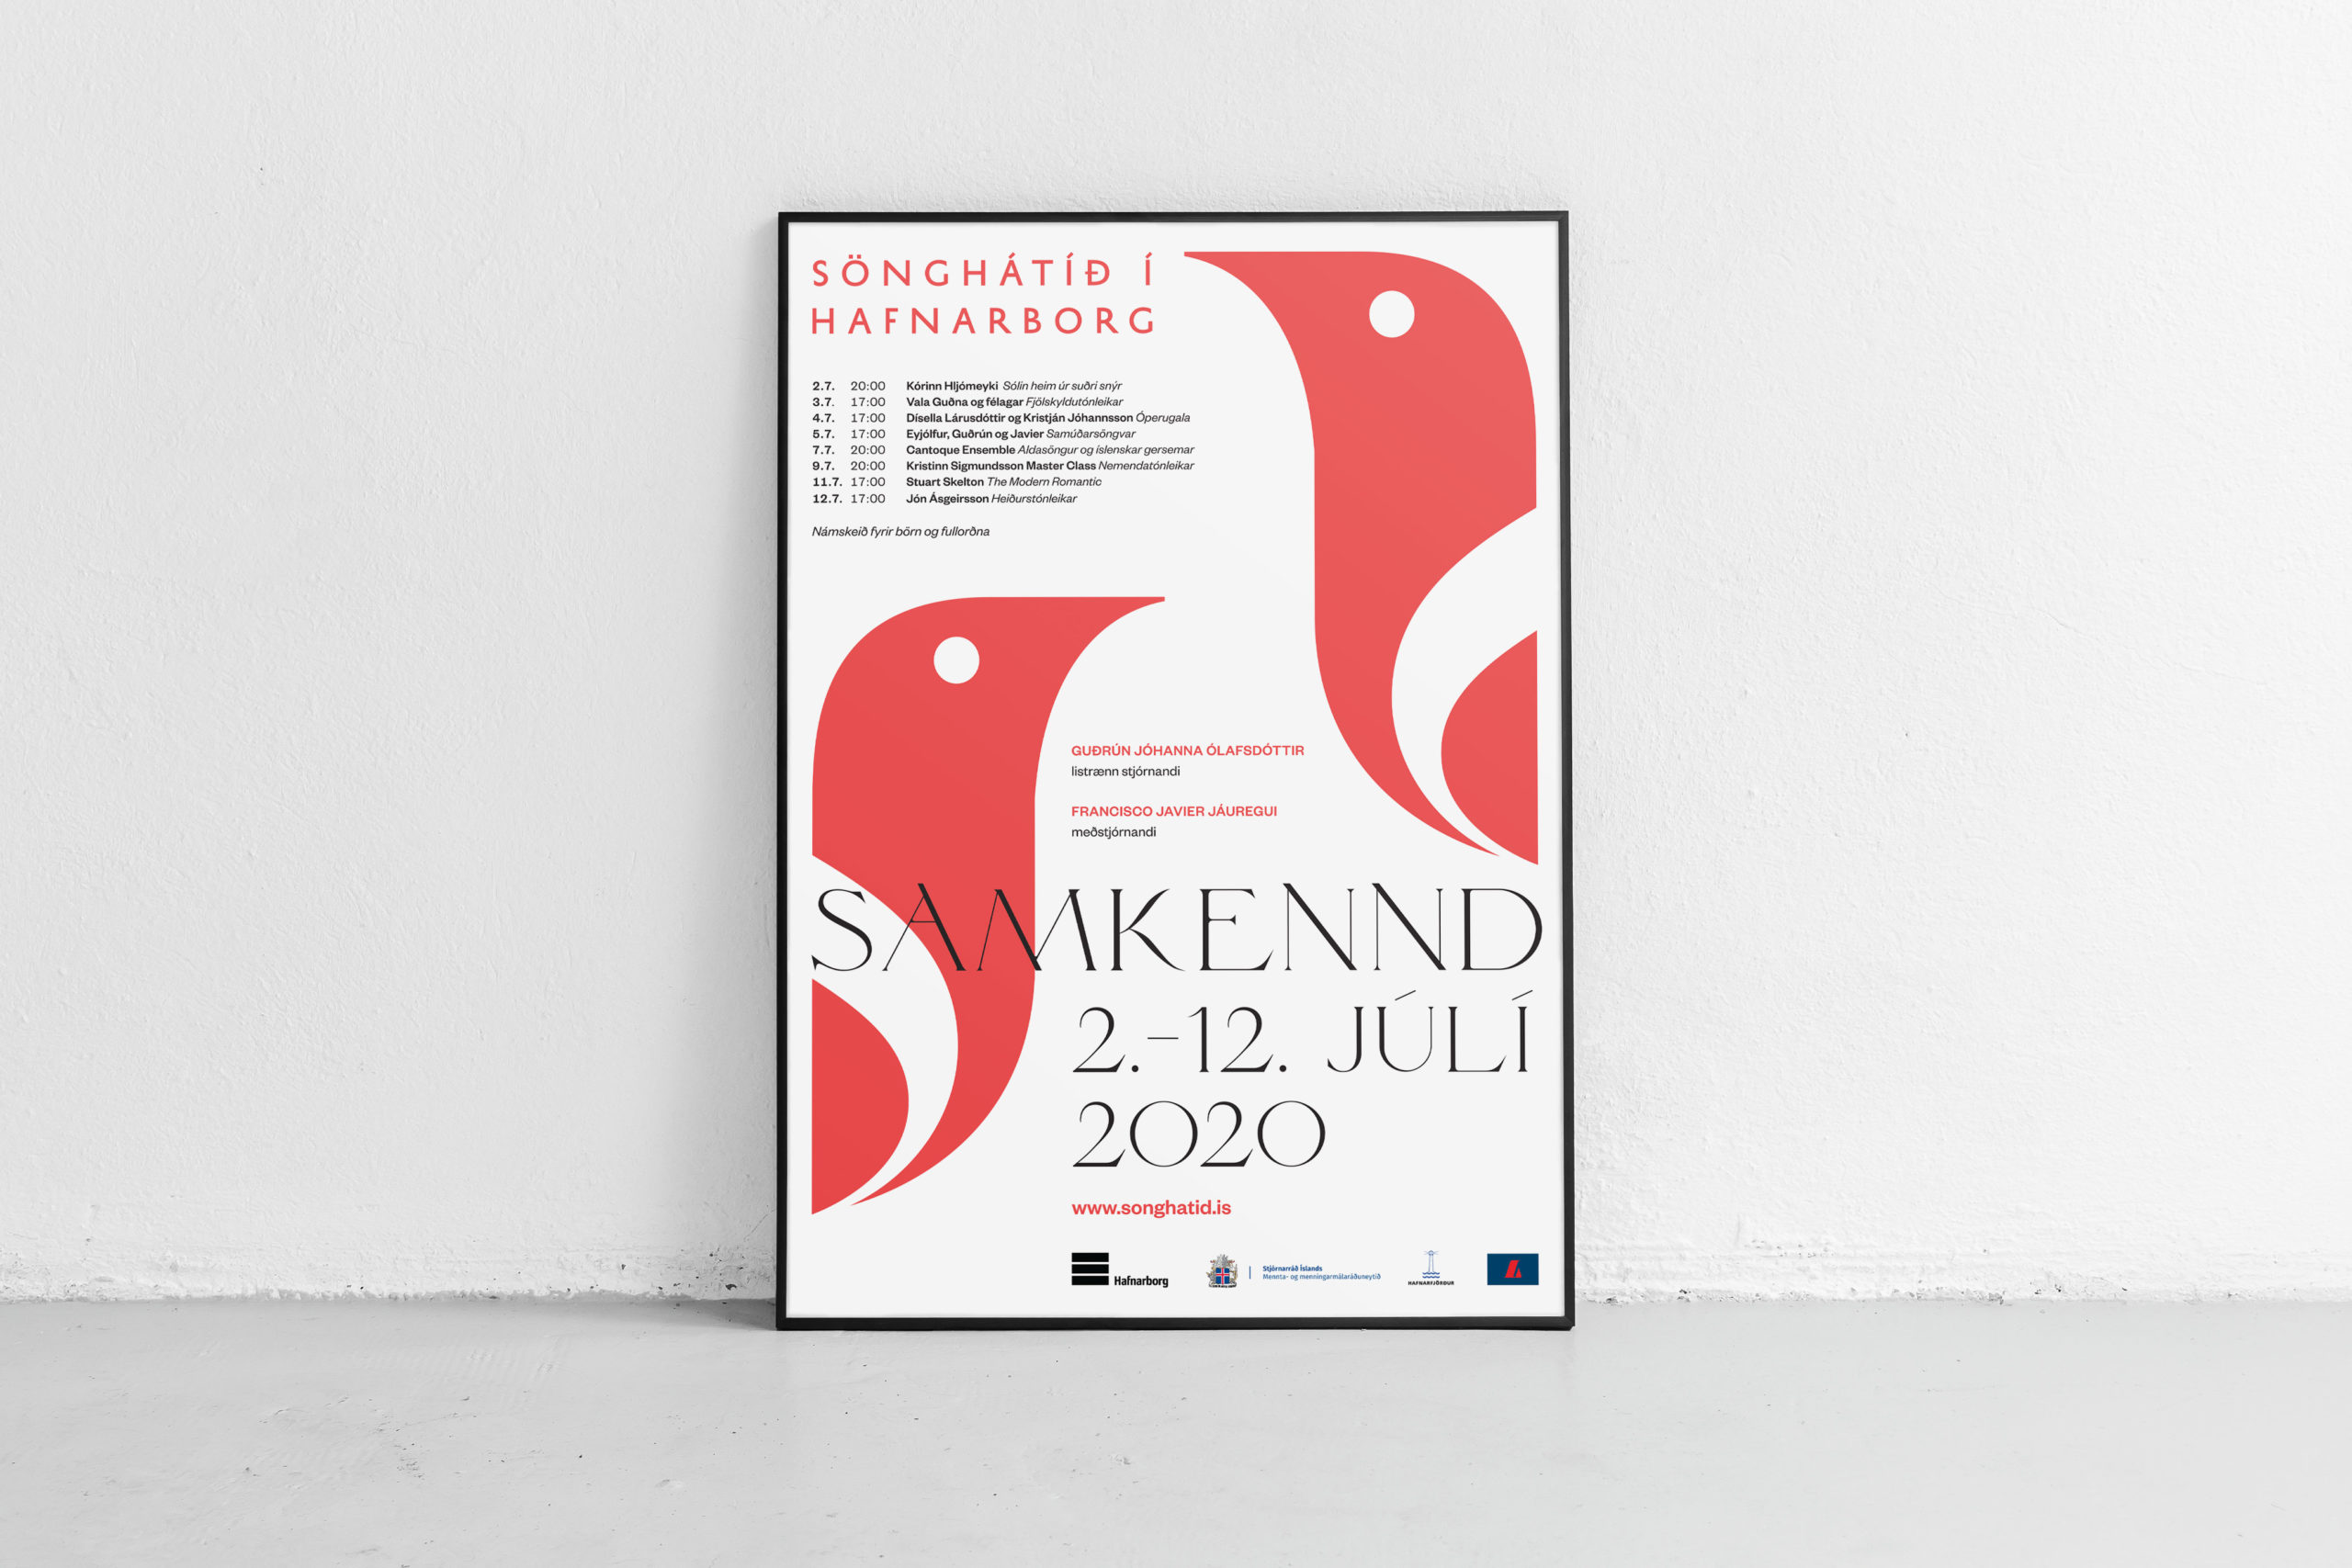 Songhatid_2020_Poster_Framed_Wide